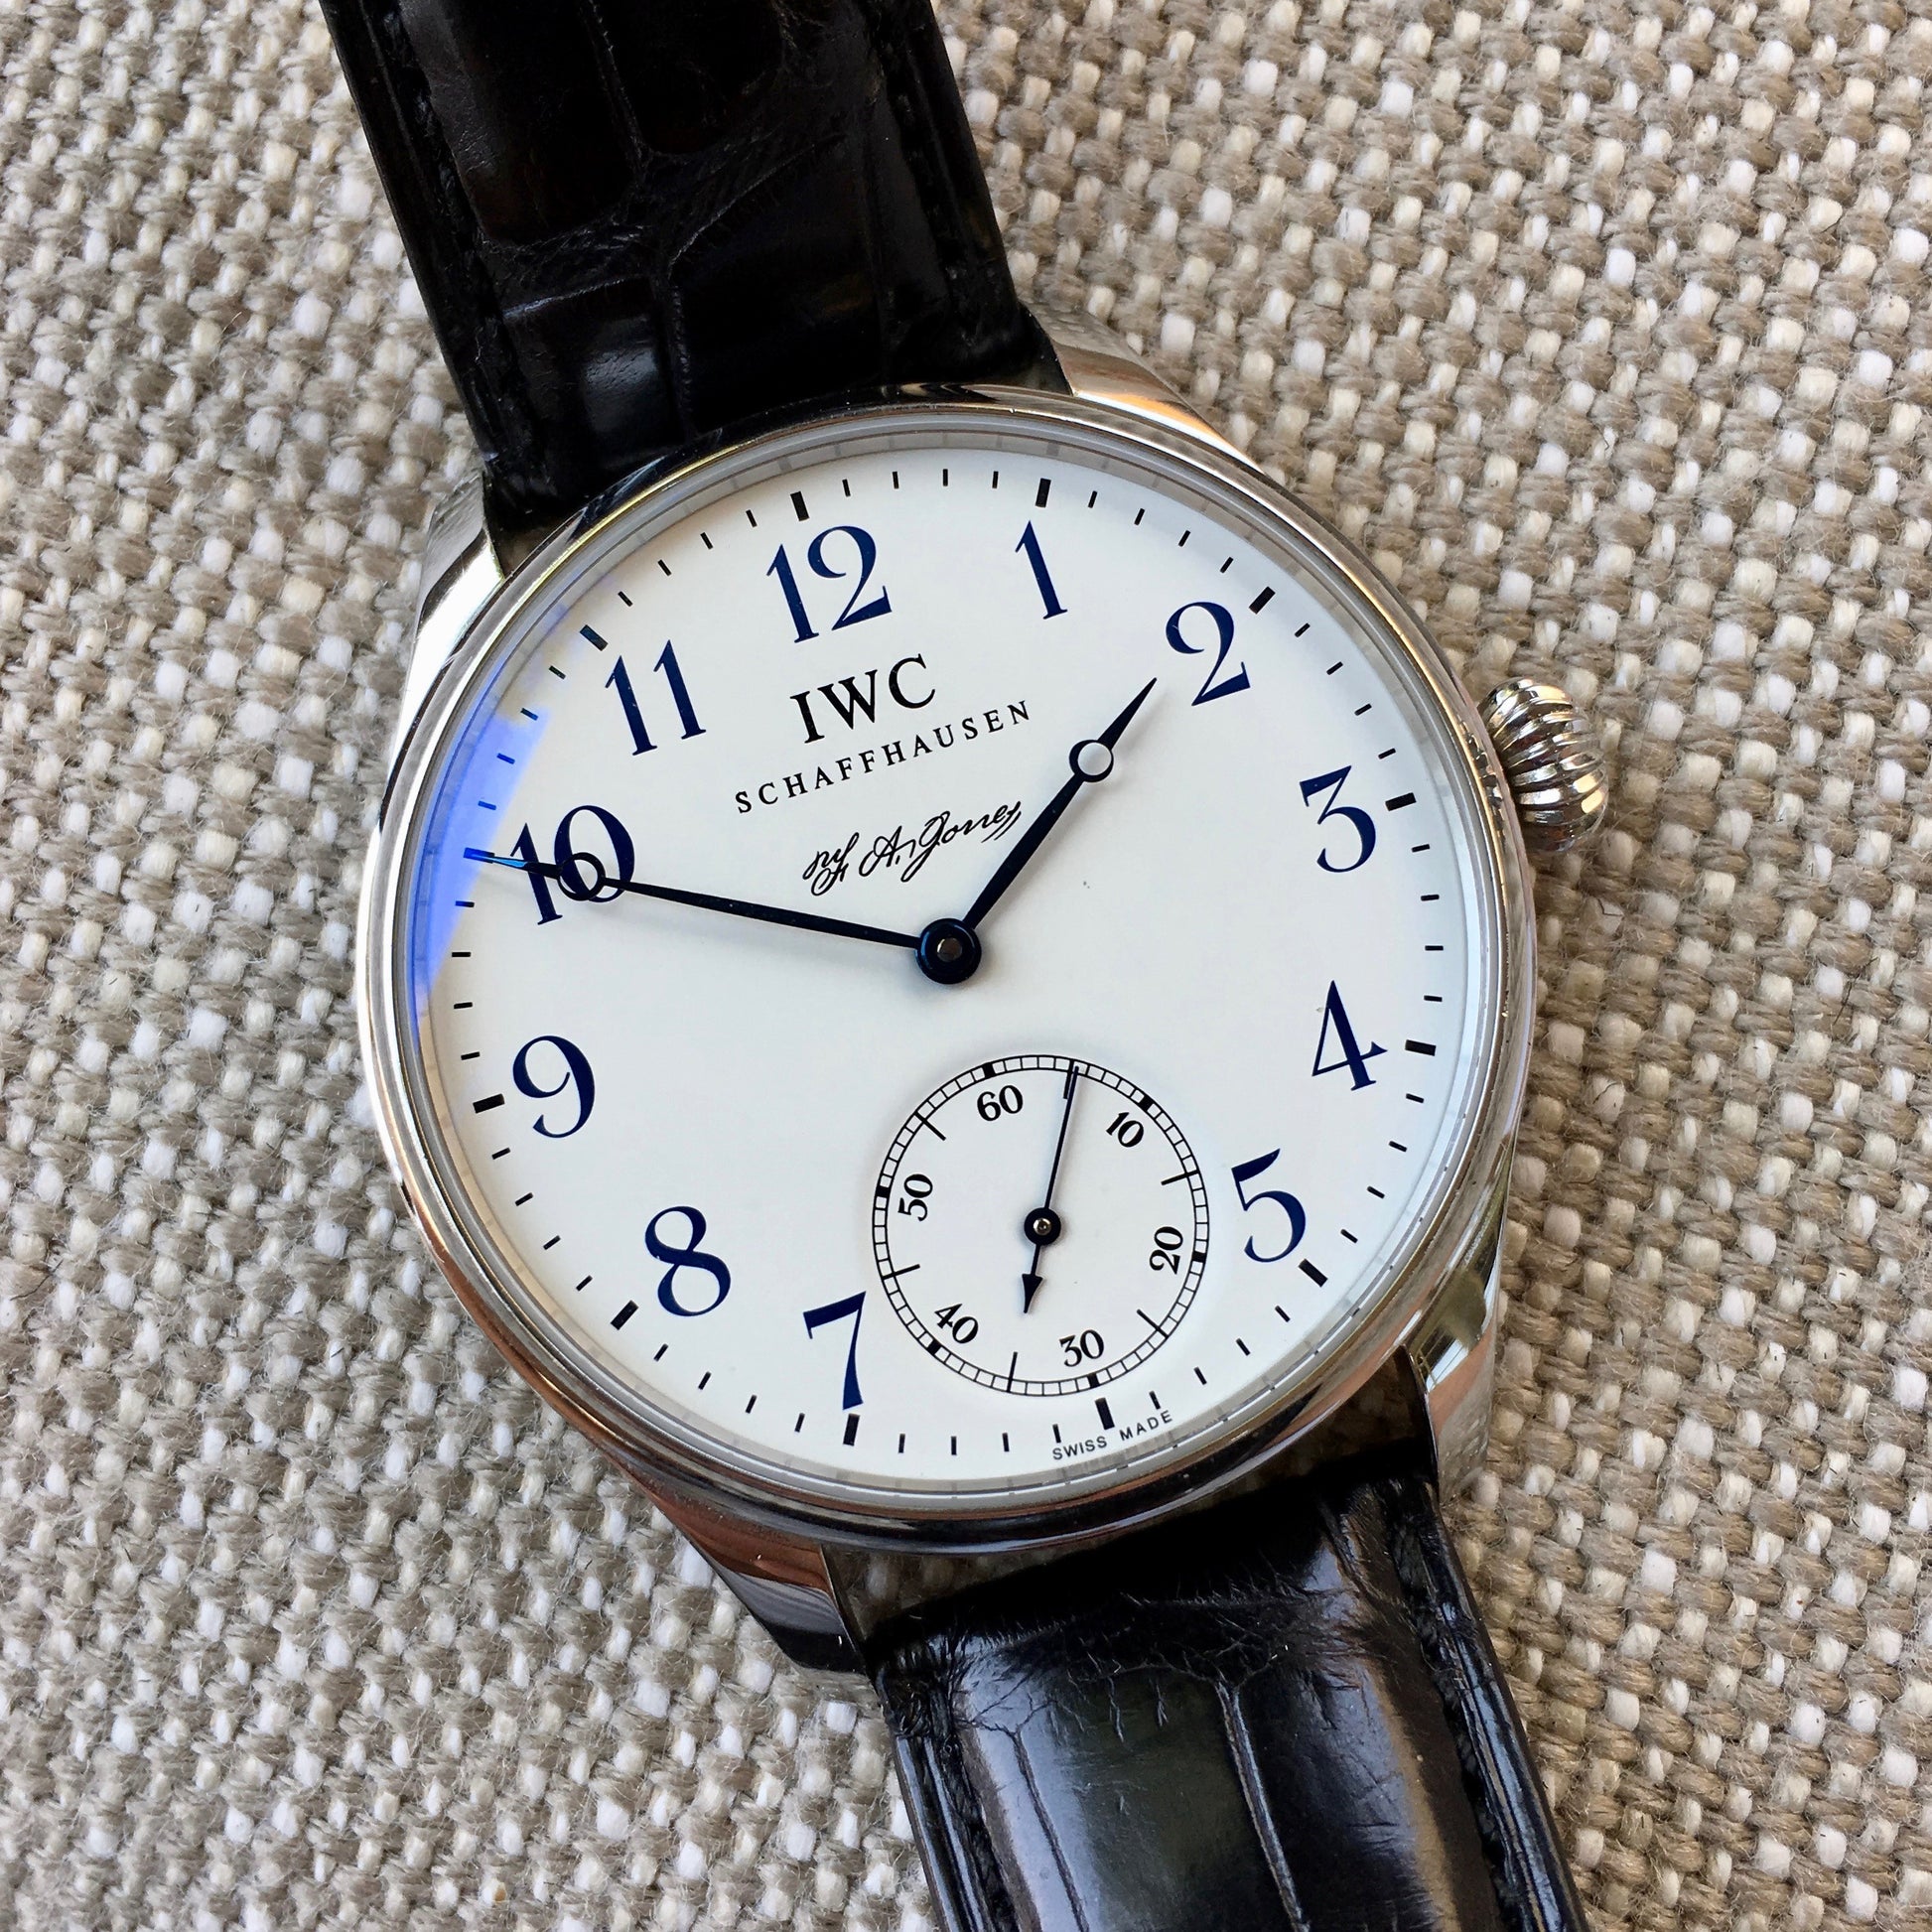 IWC Portuguese F.A. Jones 5442 Limited Edition 42mm Manual Wind Enamel Wristwatch - Hashtag Watch Company